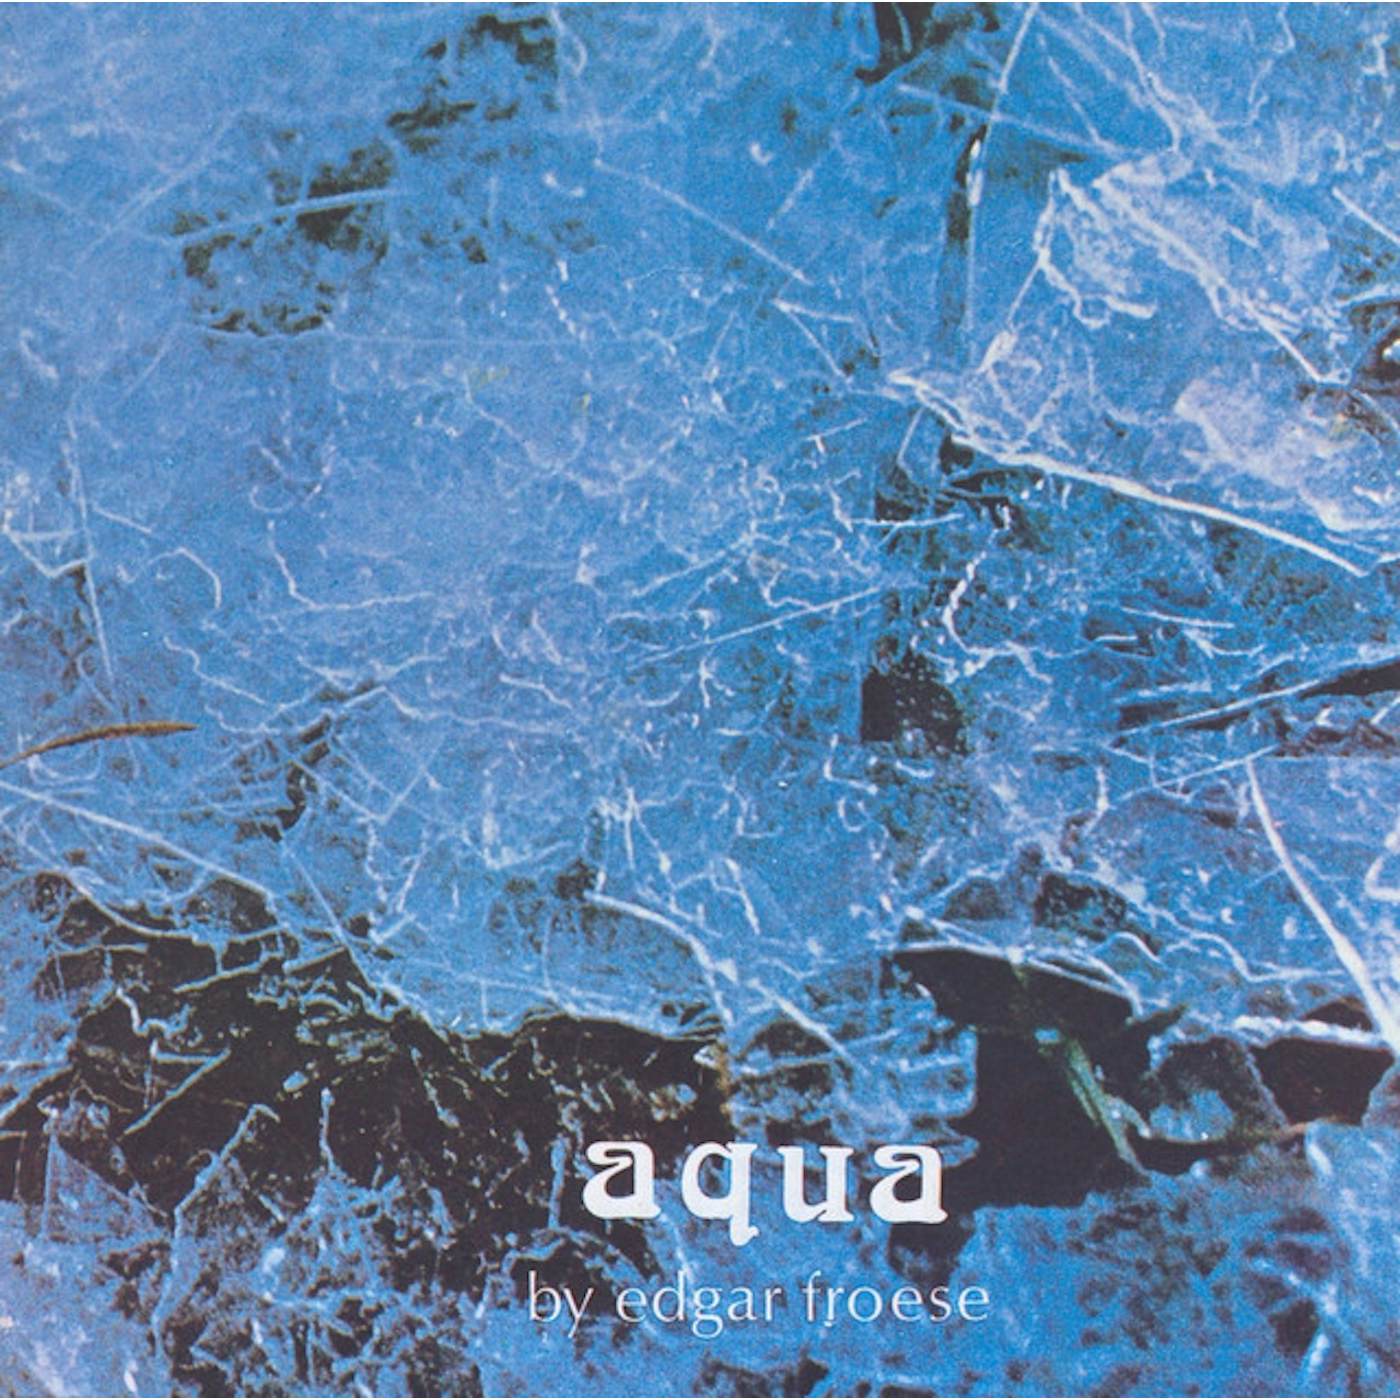 Edgar Froese Aqua Vinyl Record